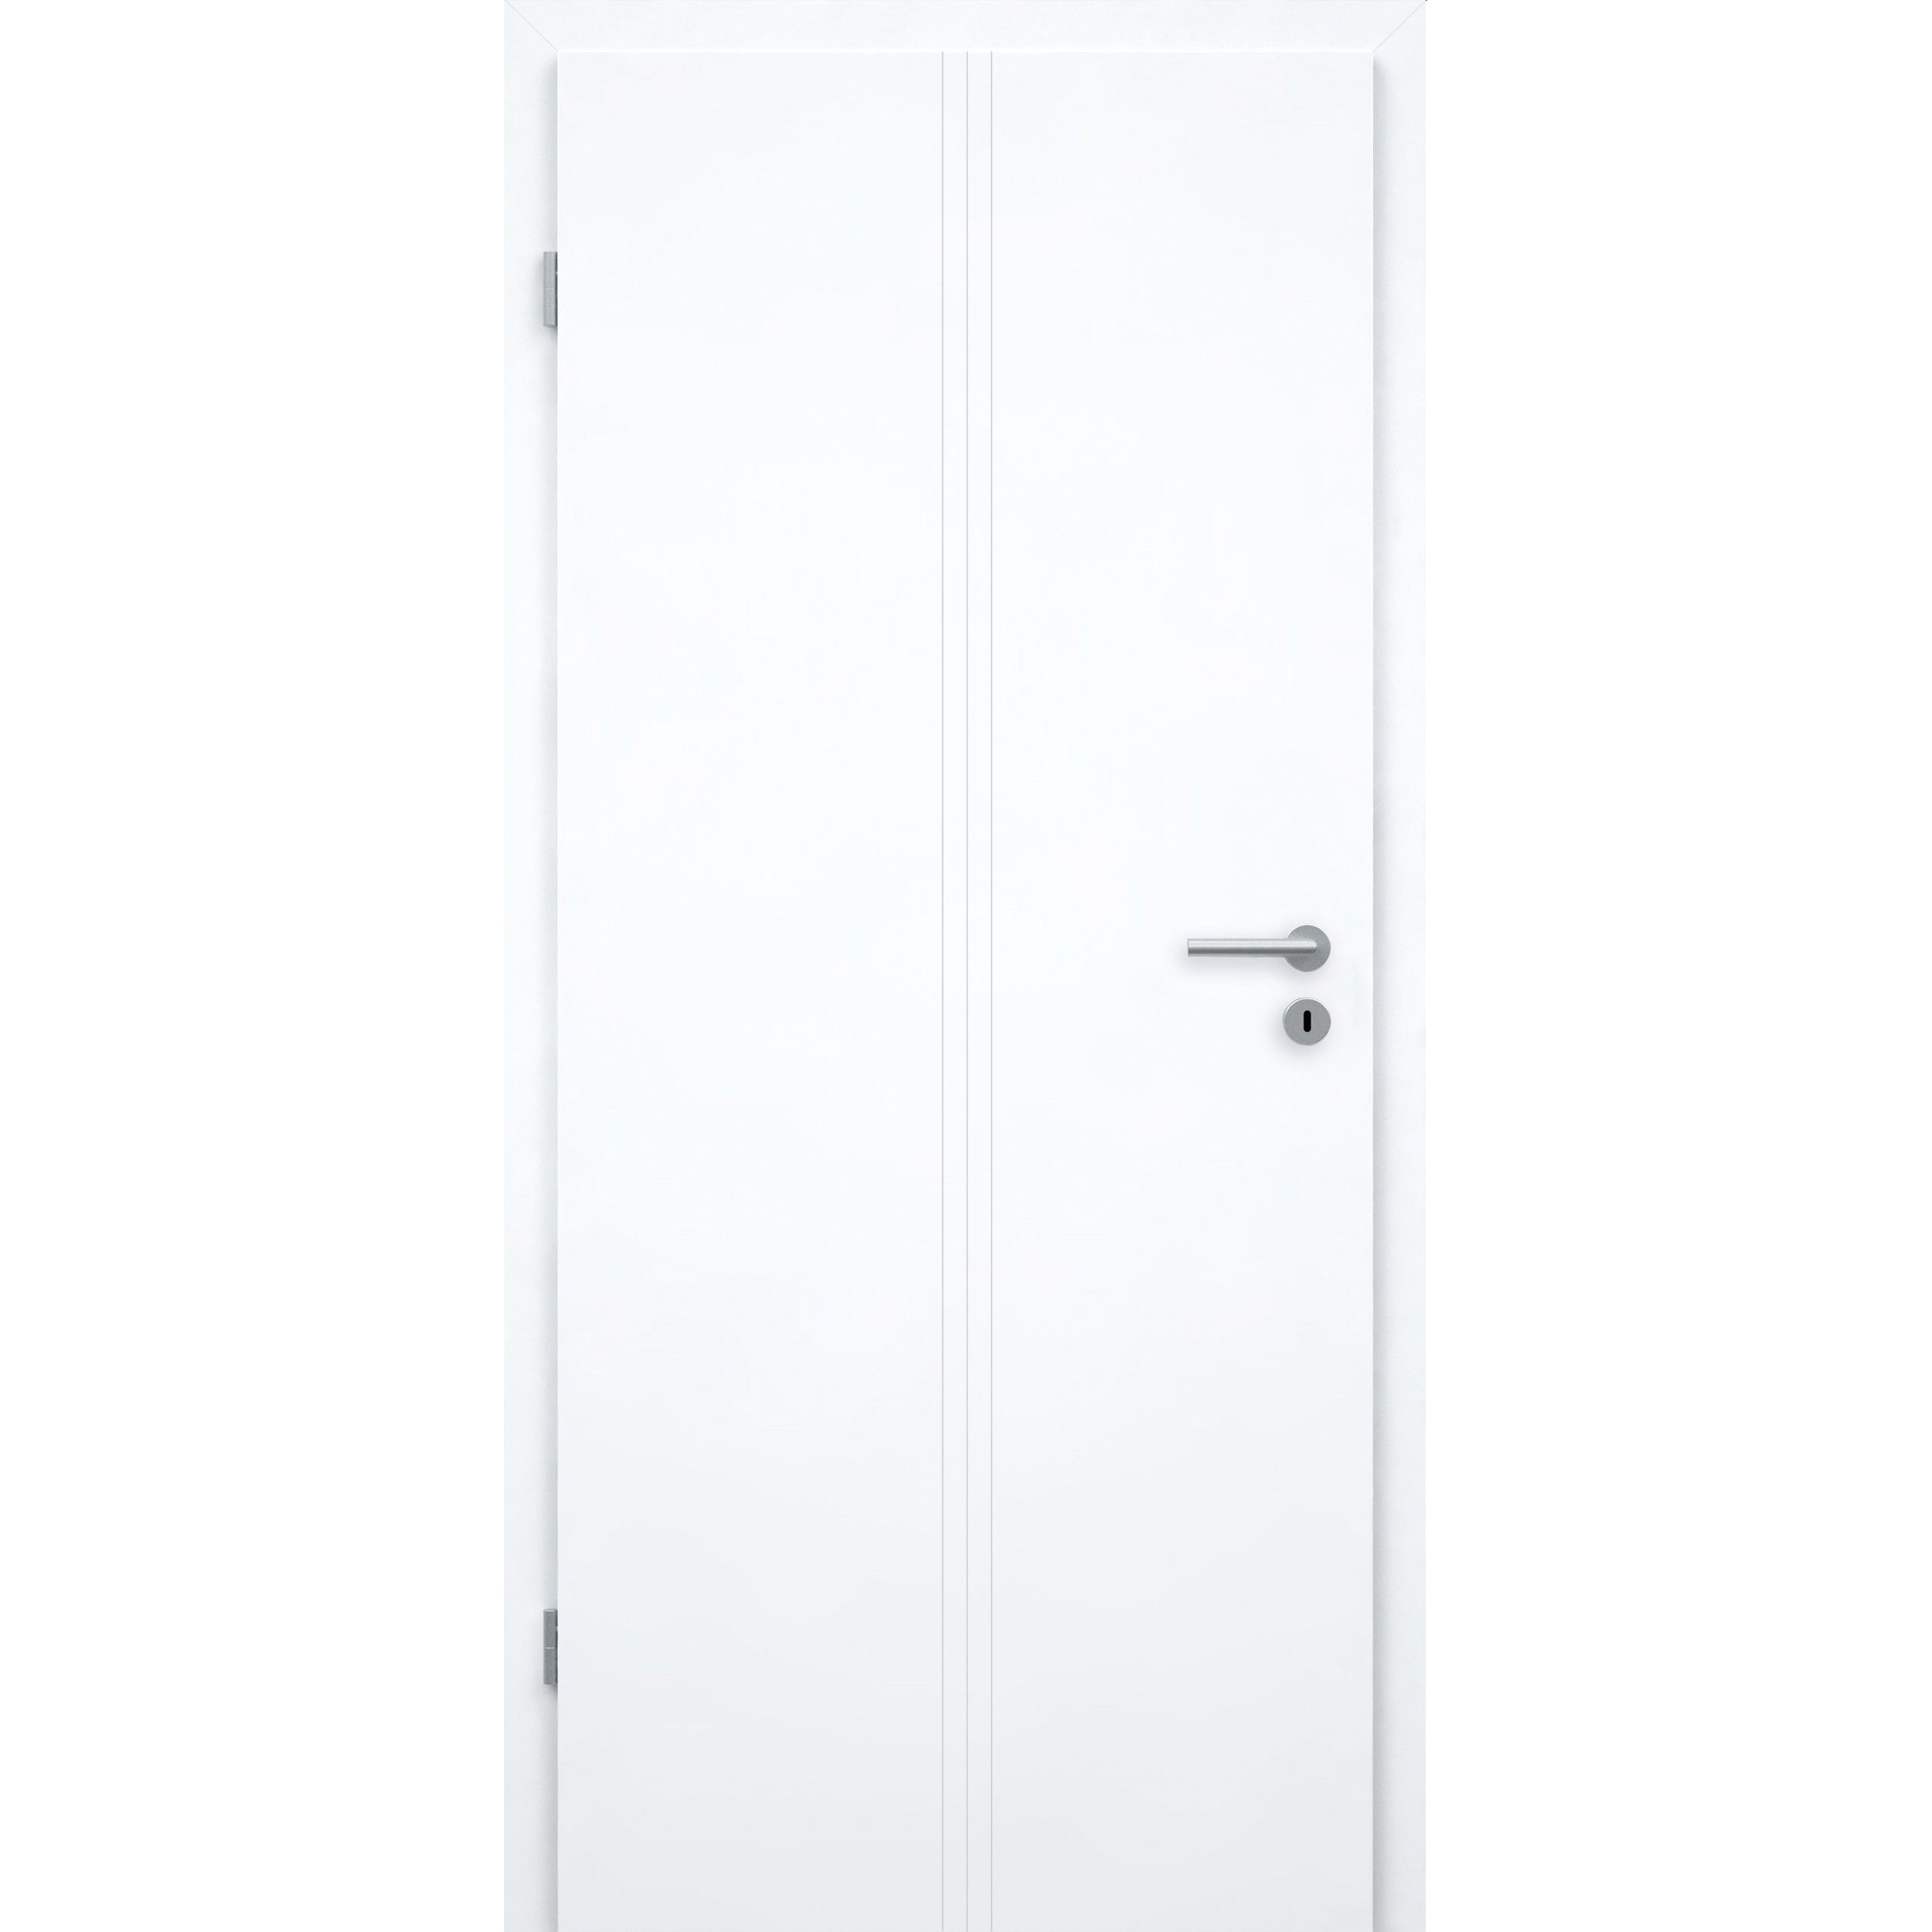 Wohnungseingangstür brillant-weiß 3 Rillen aufrecht Designkante SK1 / KK3 - Modell Designtür VM33